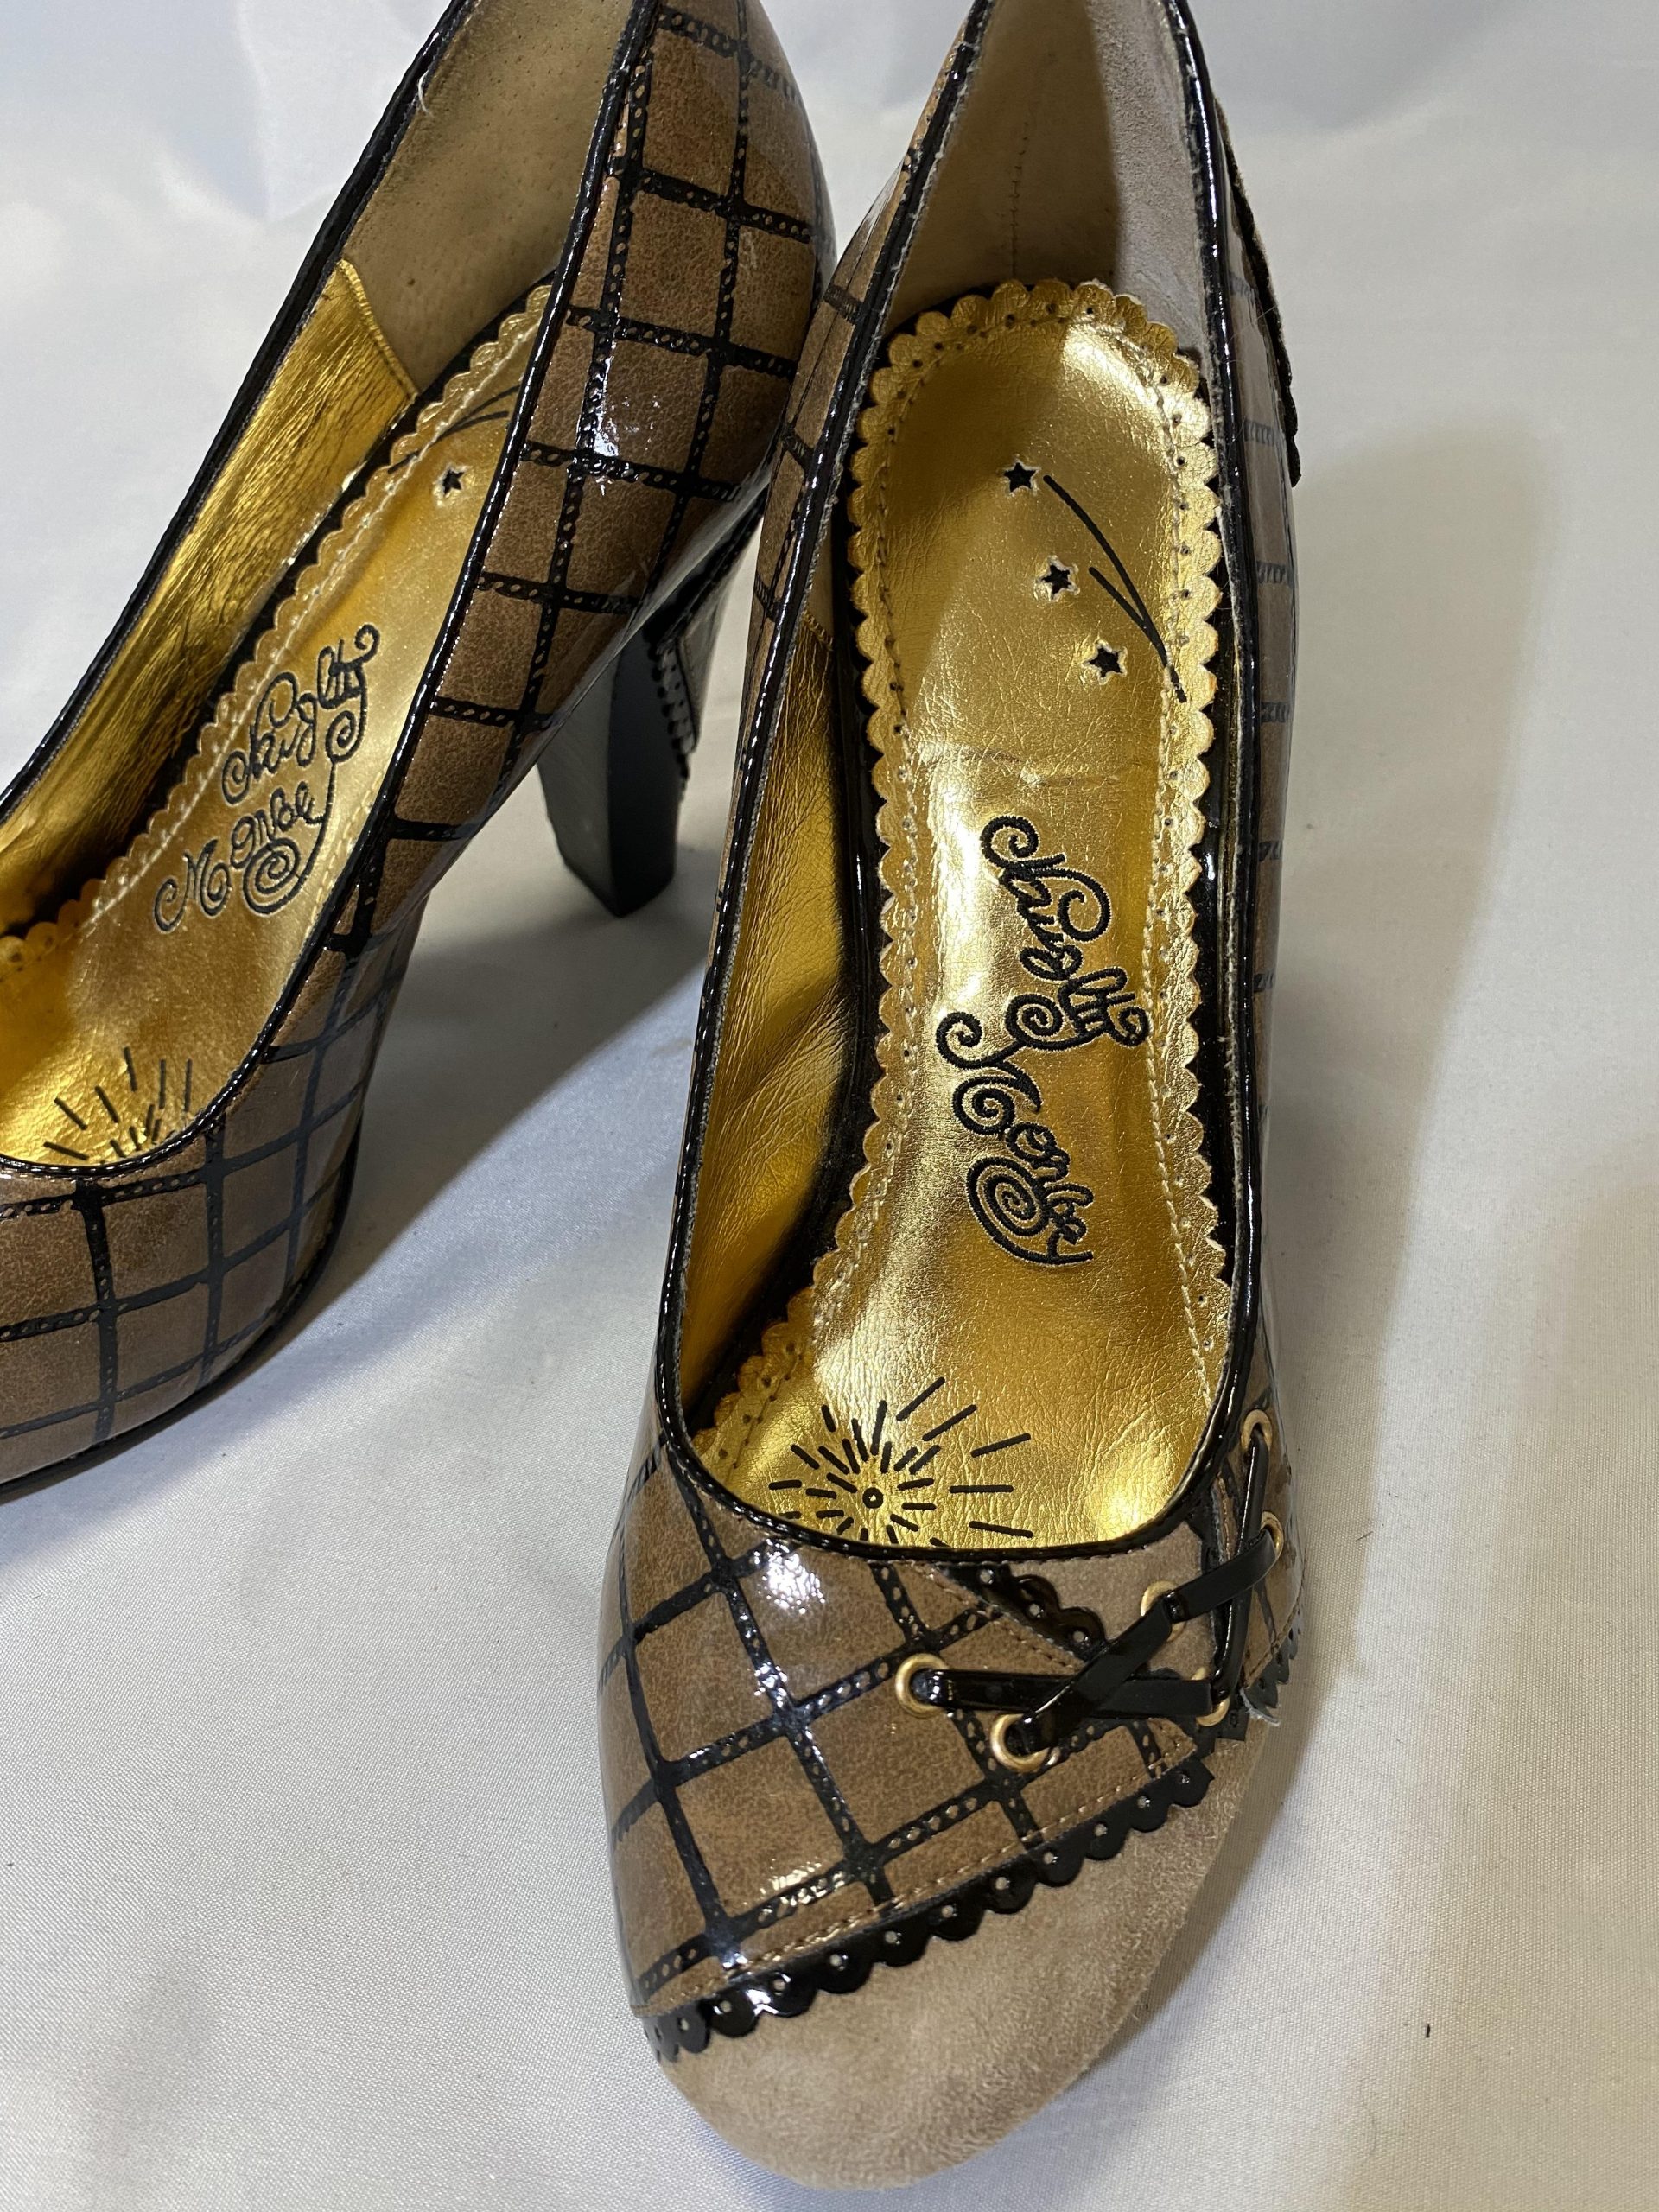 Size 9 Lady Heel | Womens heels, Heels, Lady